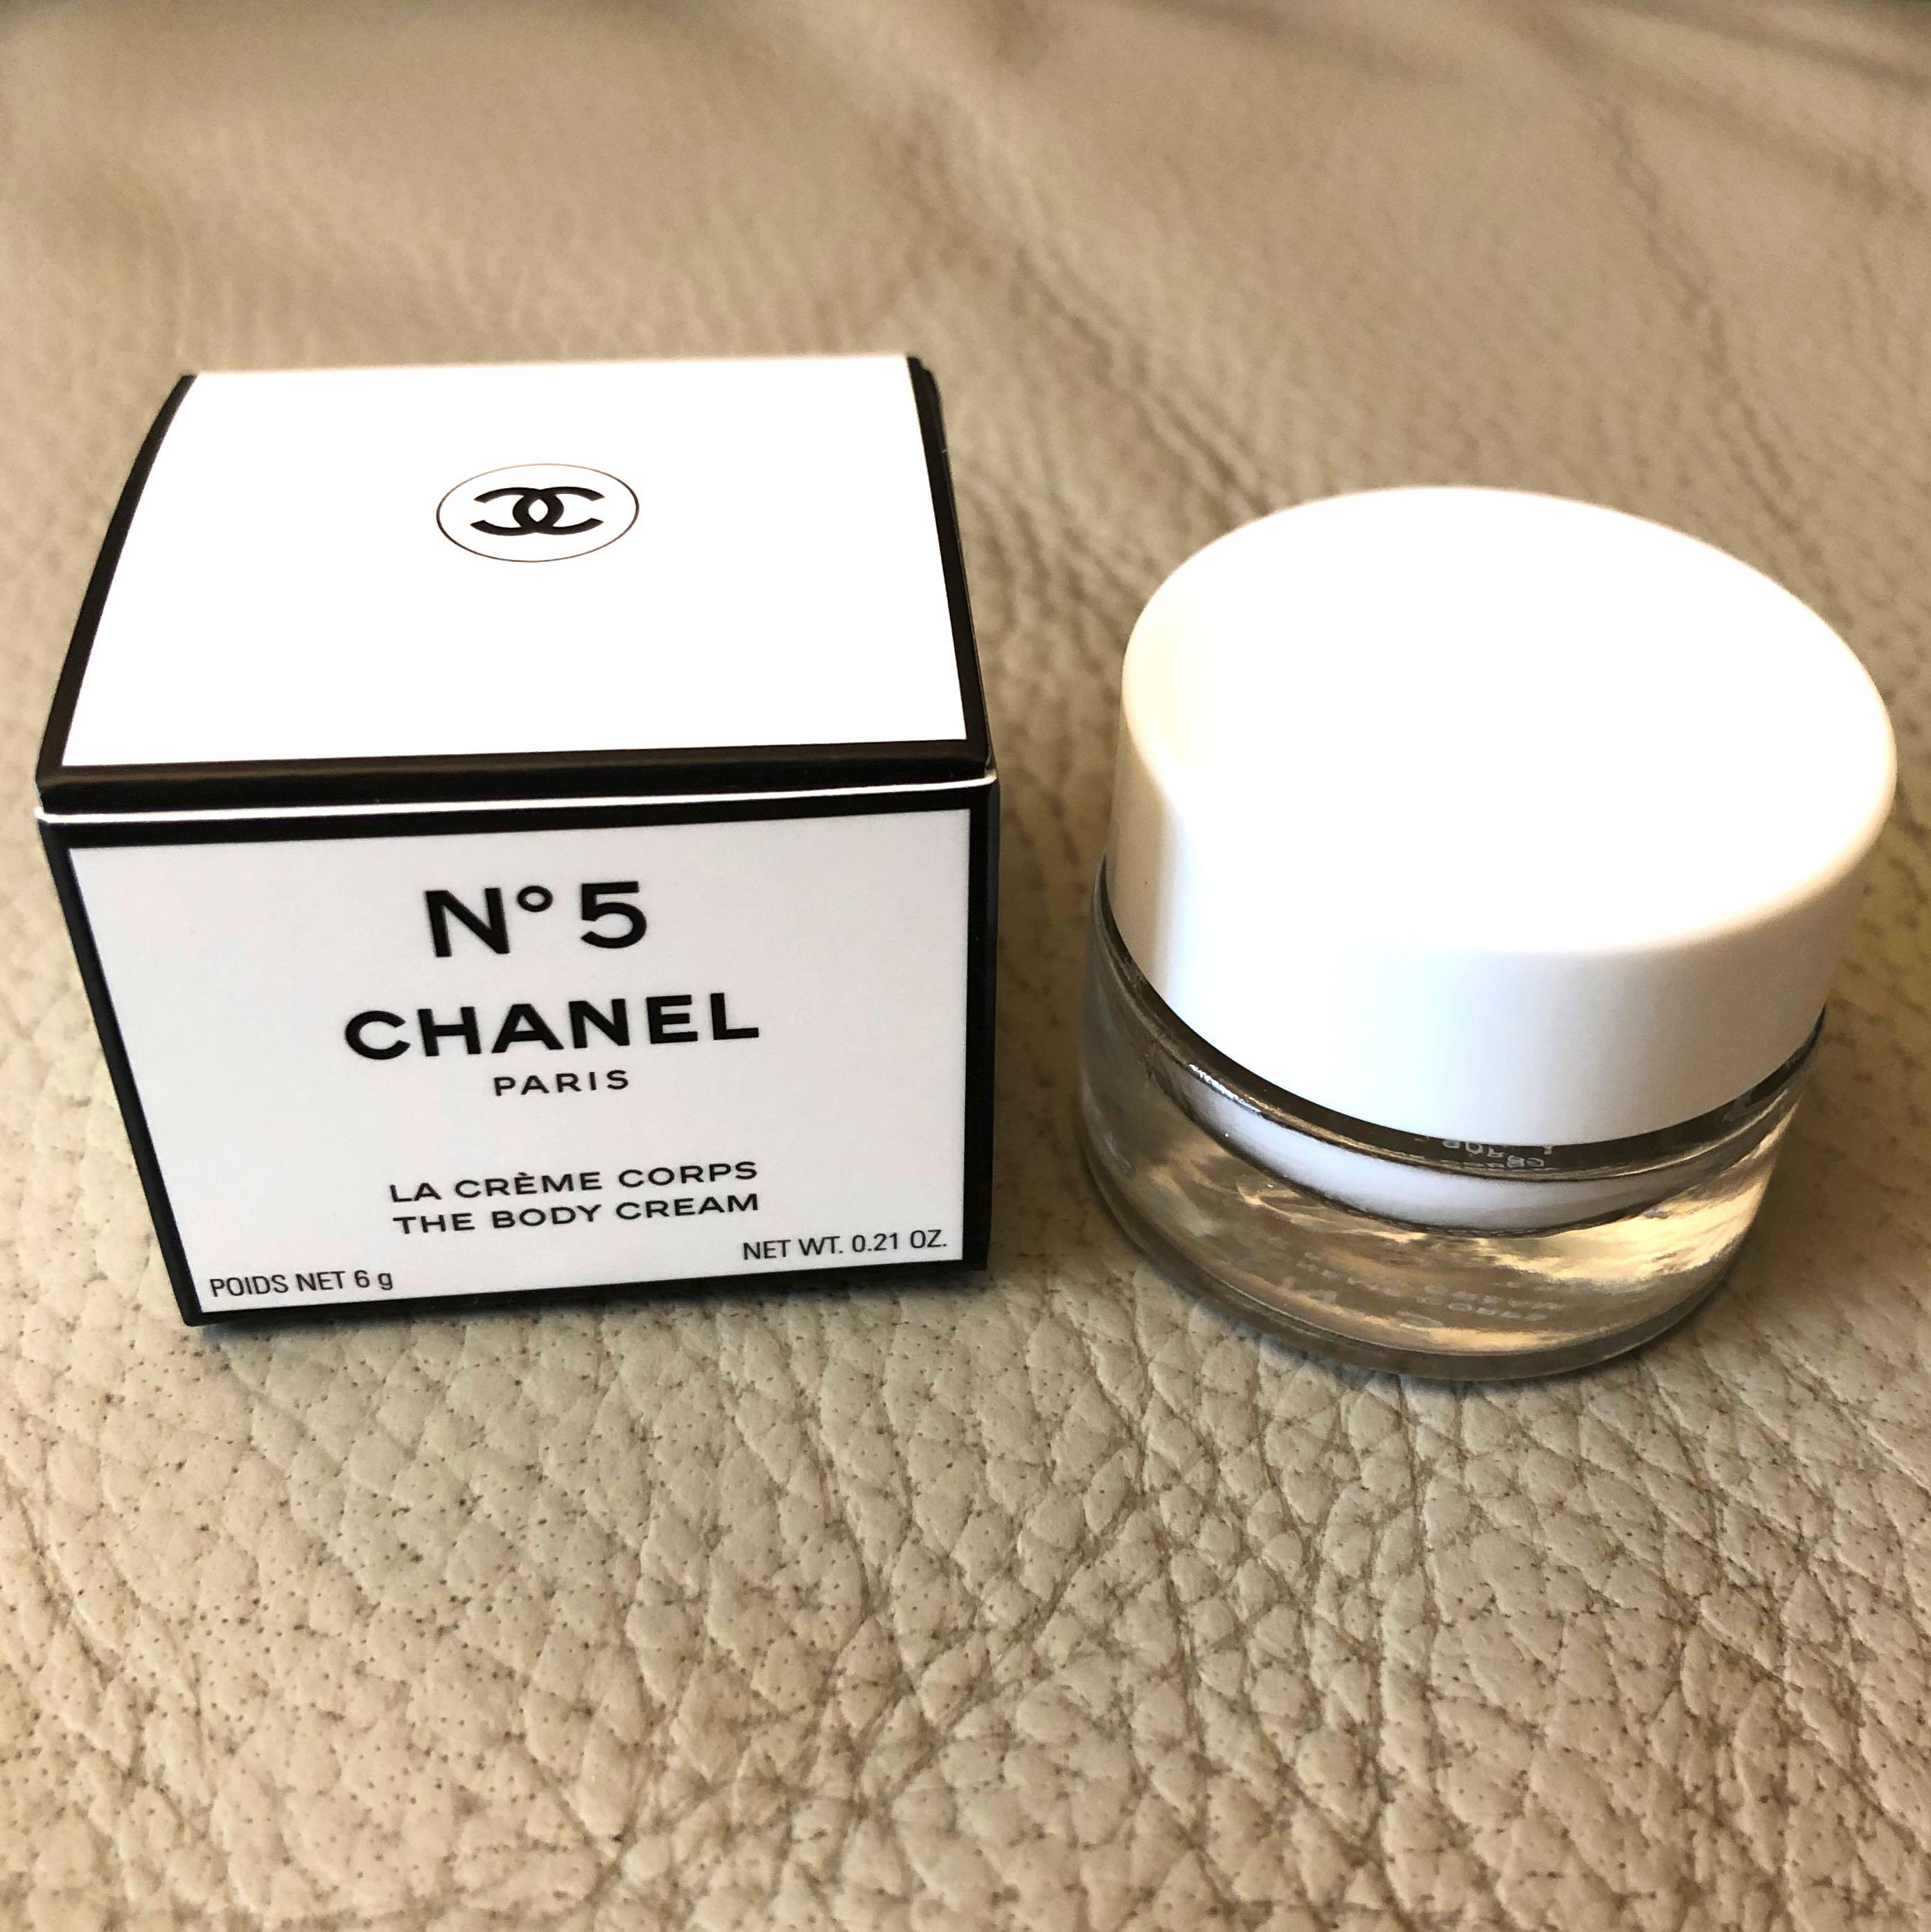 Cheap BNIB Chanel N°5 The Body Cream / Chanel No5 Body Cream